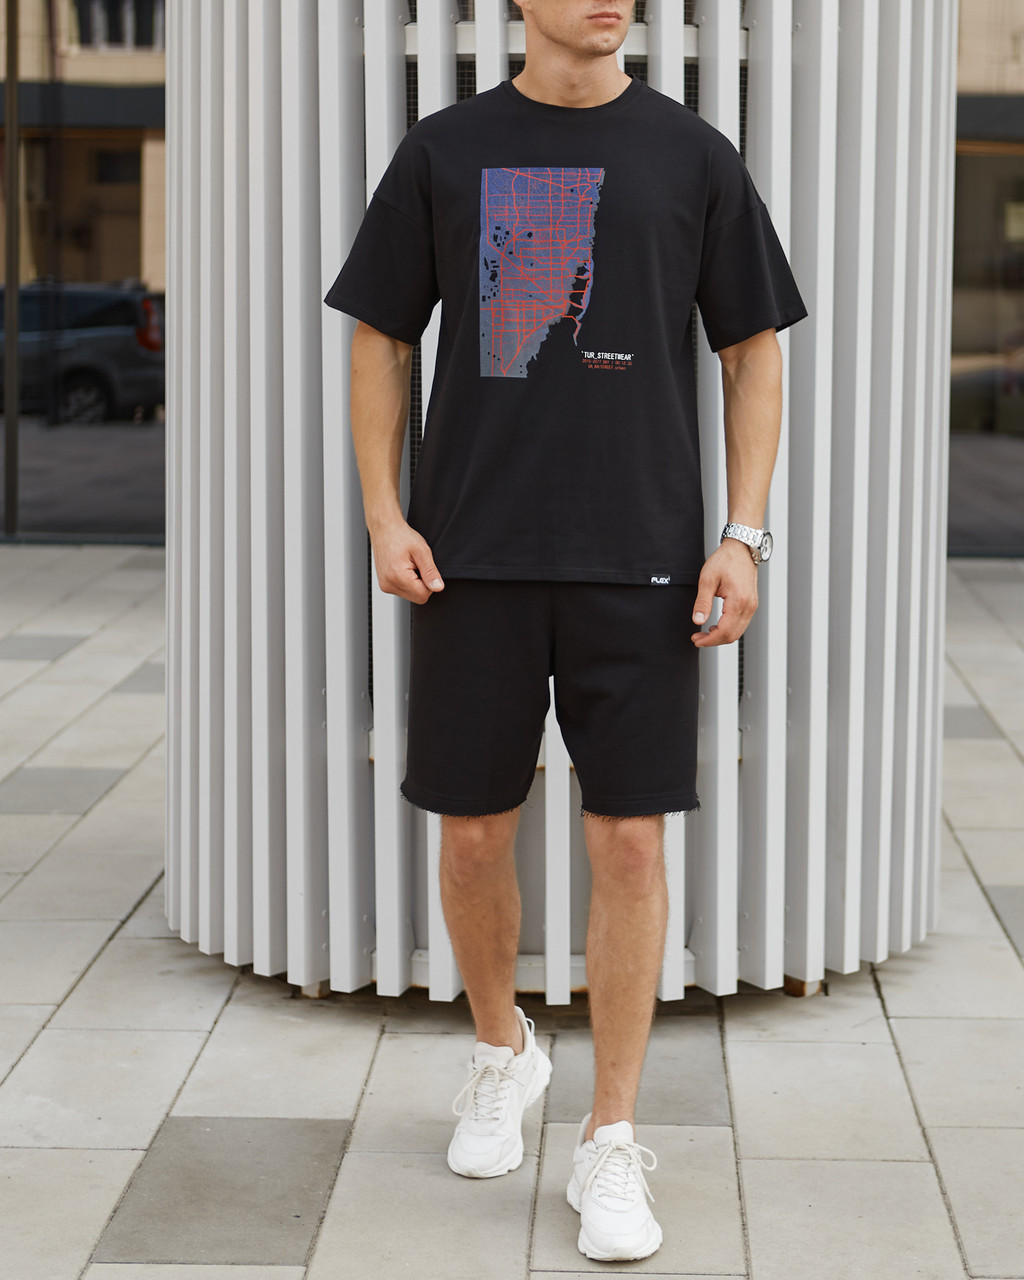 Чоловічі футболки Каліфорнія чорна оверсайз модель від бренду Тур TURWEAR - Фото 2